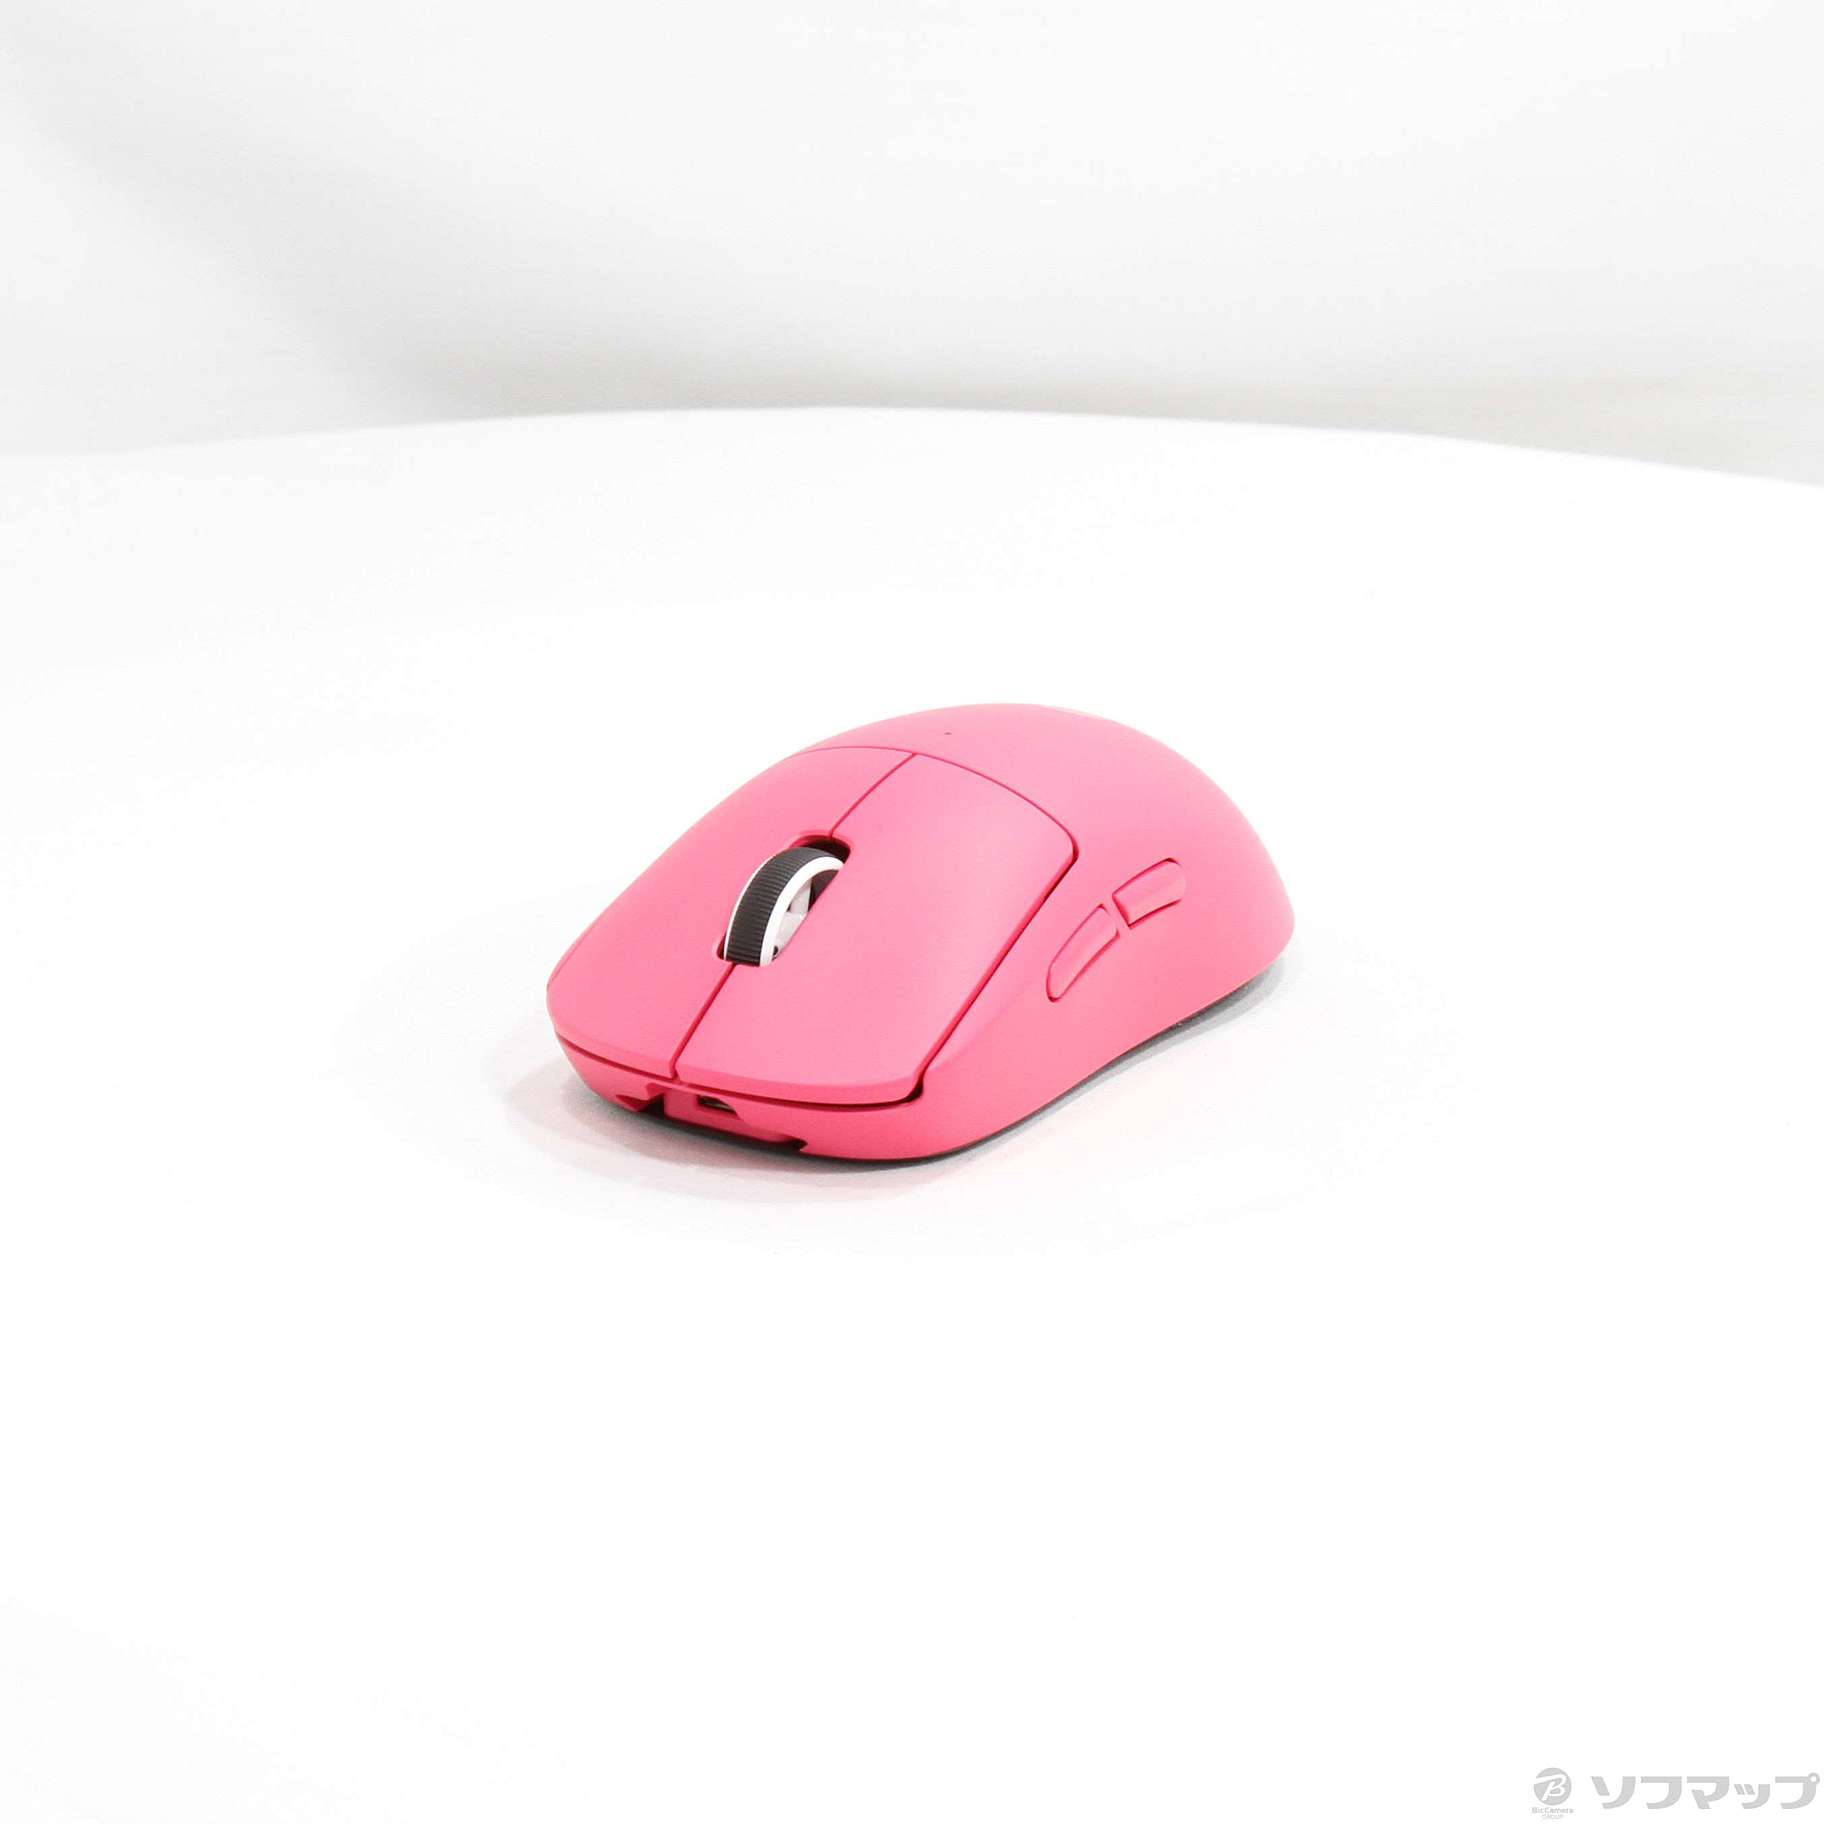 中古】〔展示品〕 Logicool PRO X SUPERLIGHT Wireless Gaming Mouse ...